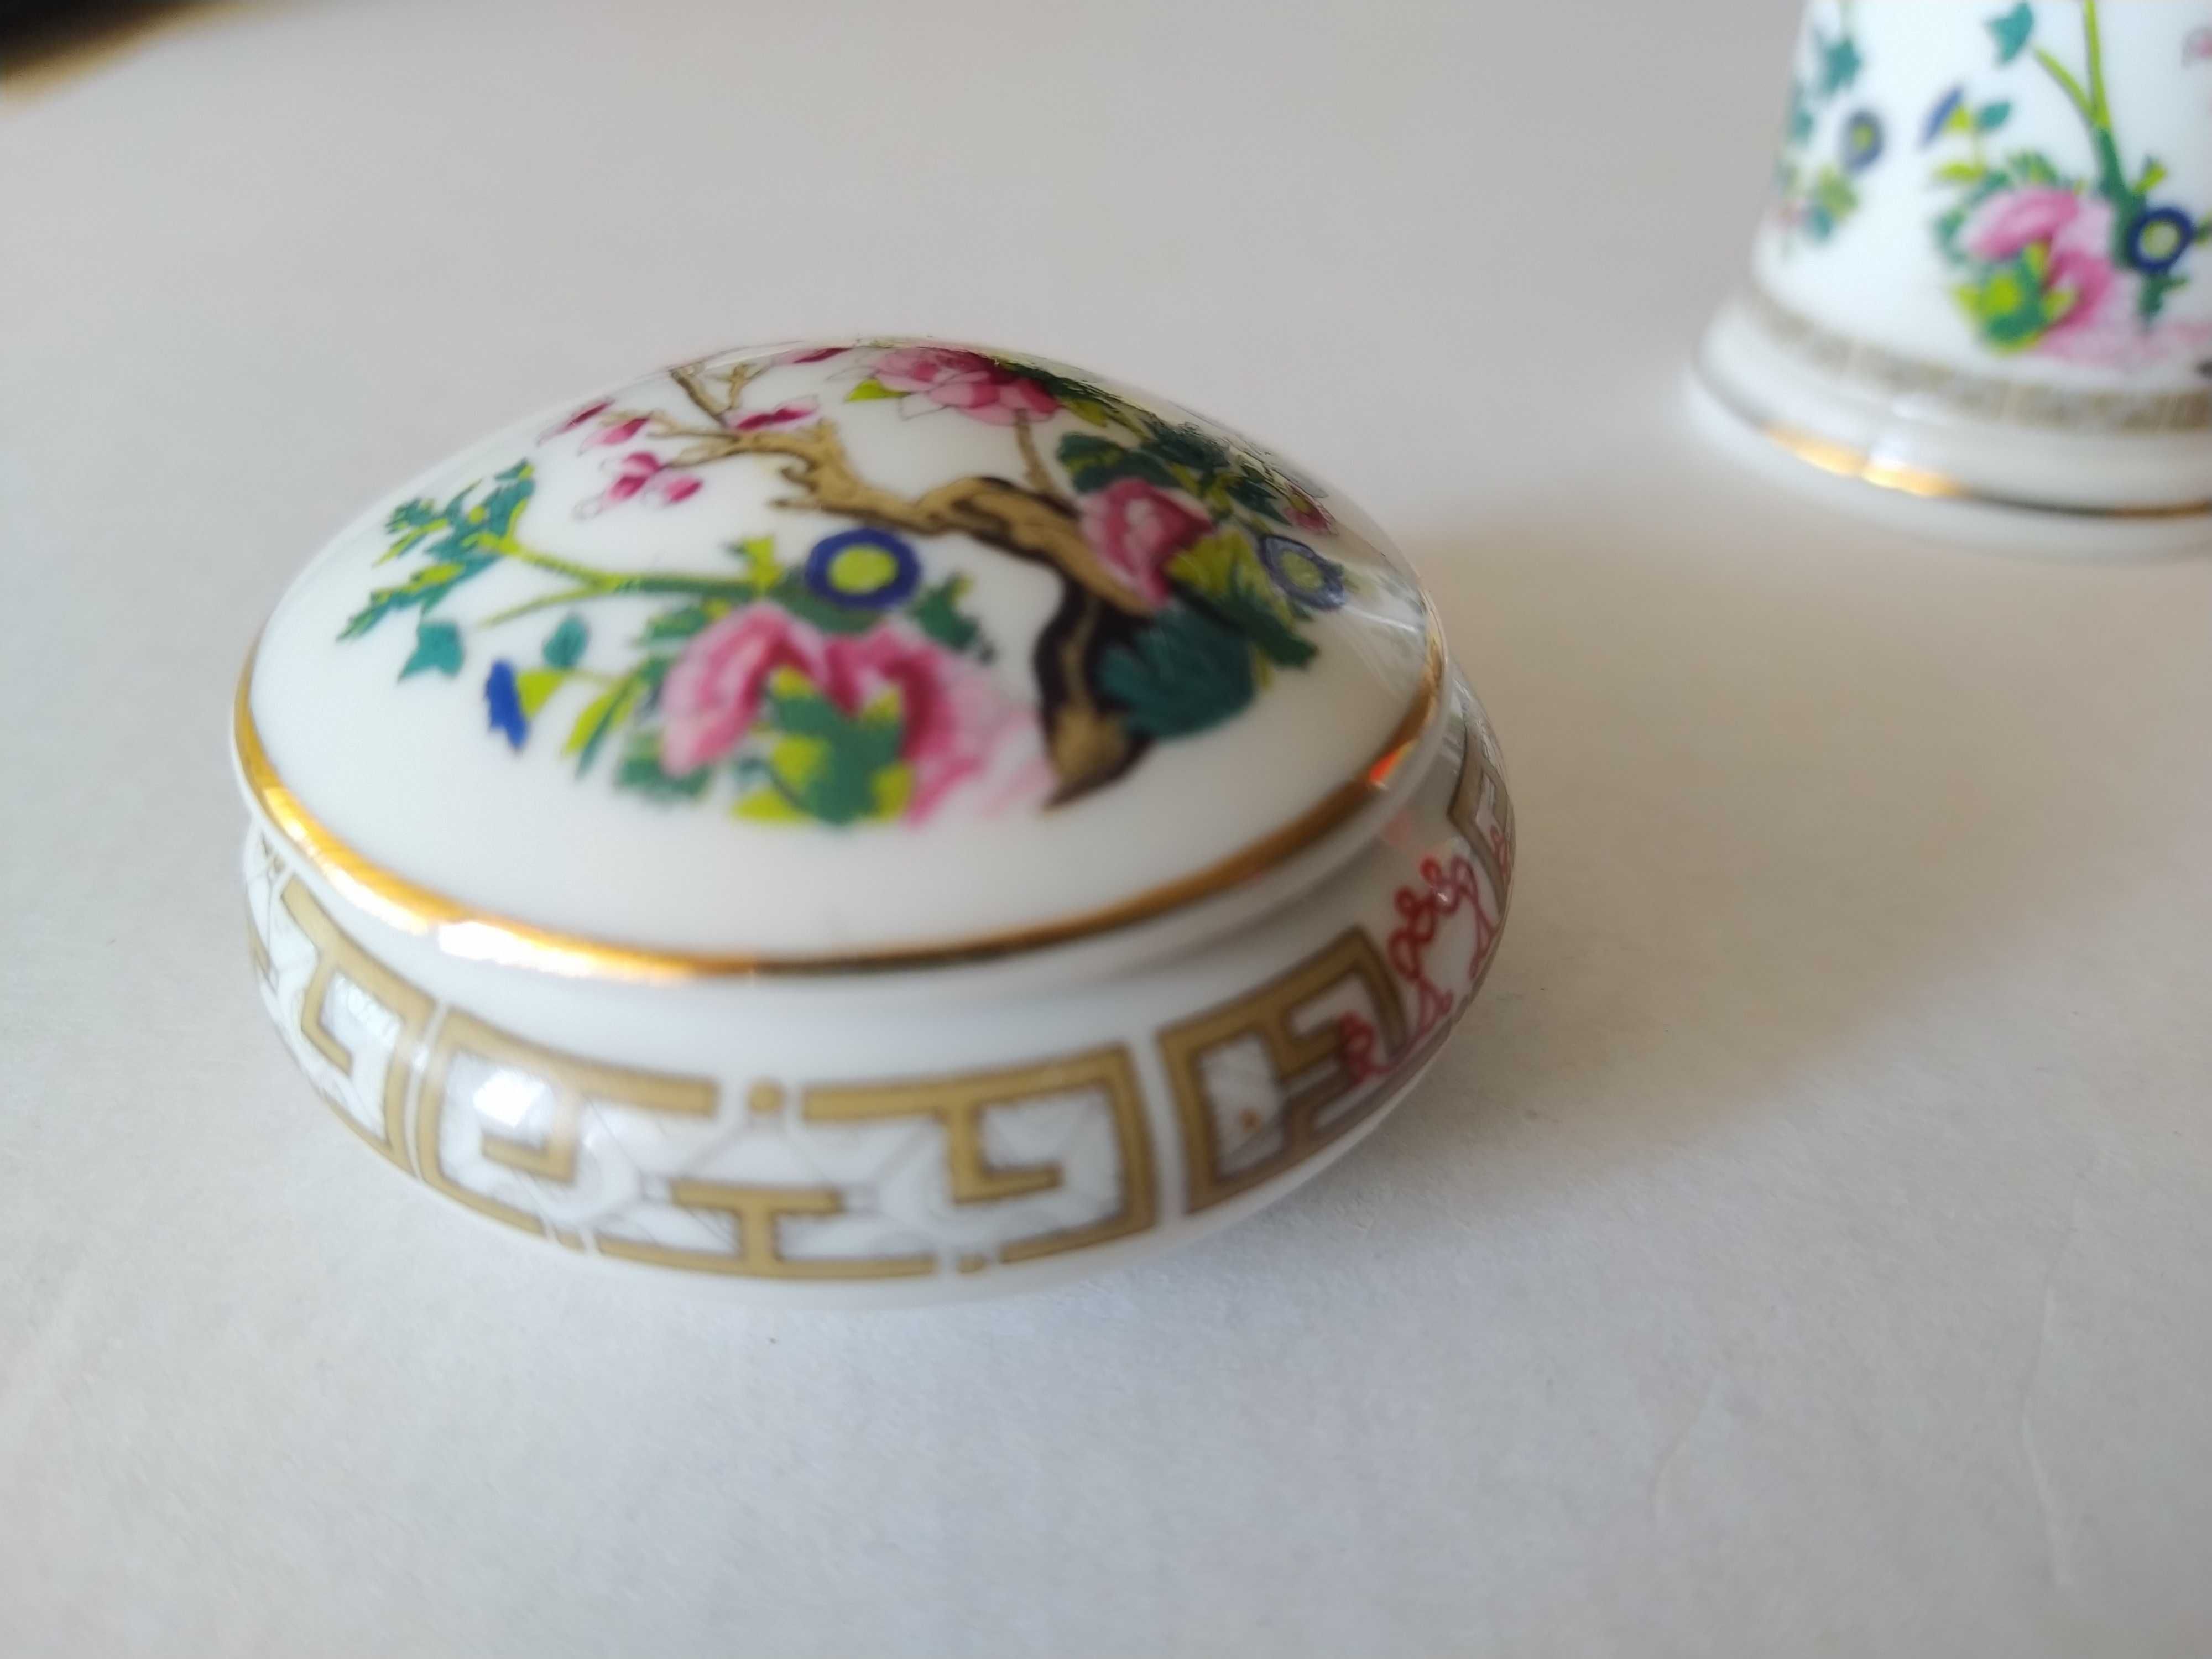 Lote de 2 peças em porcelanas PorArt - Portugal